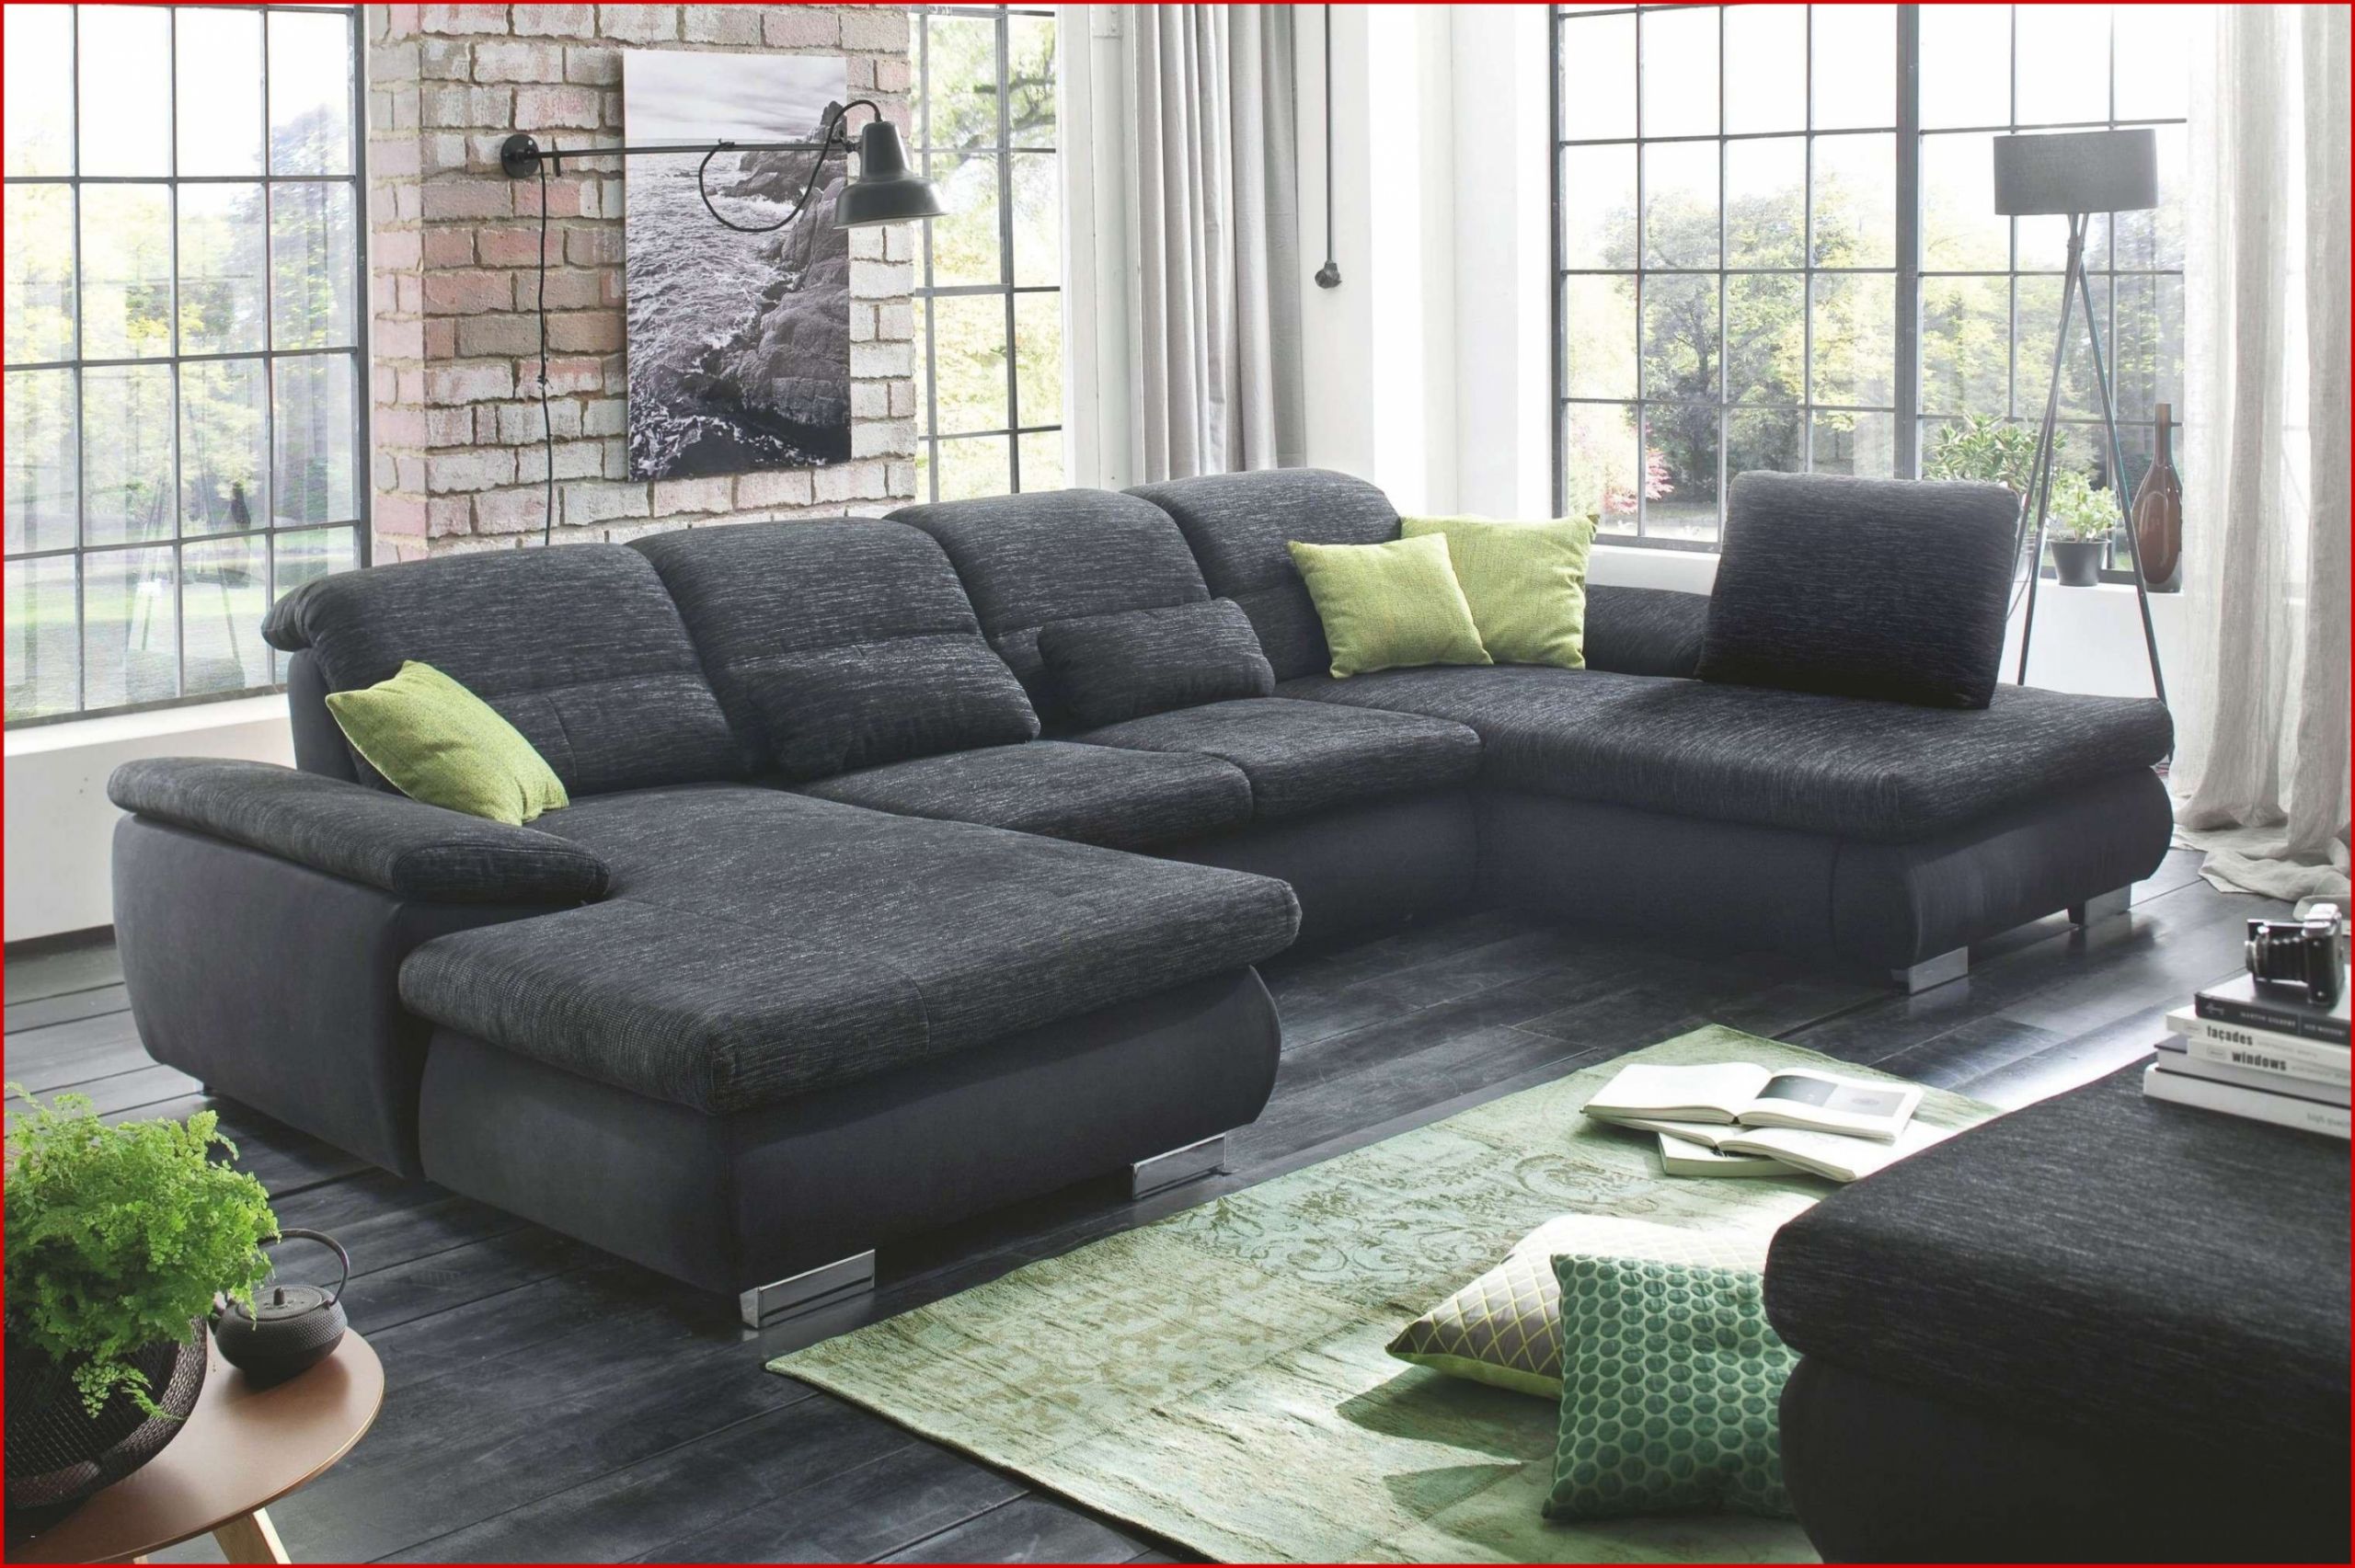 sofa schlaf elegant wohnlandschaft otto designer sofa lovely graues graue couch dekorieren graue couch dekorieren